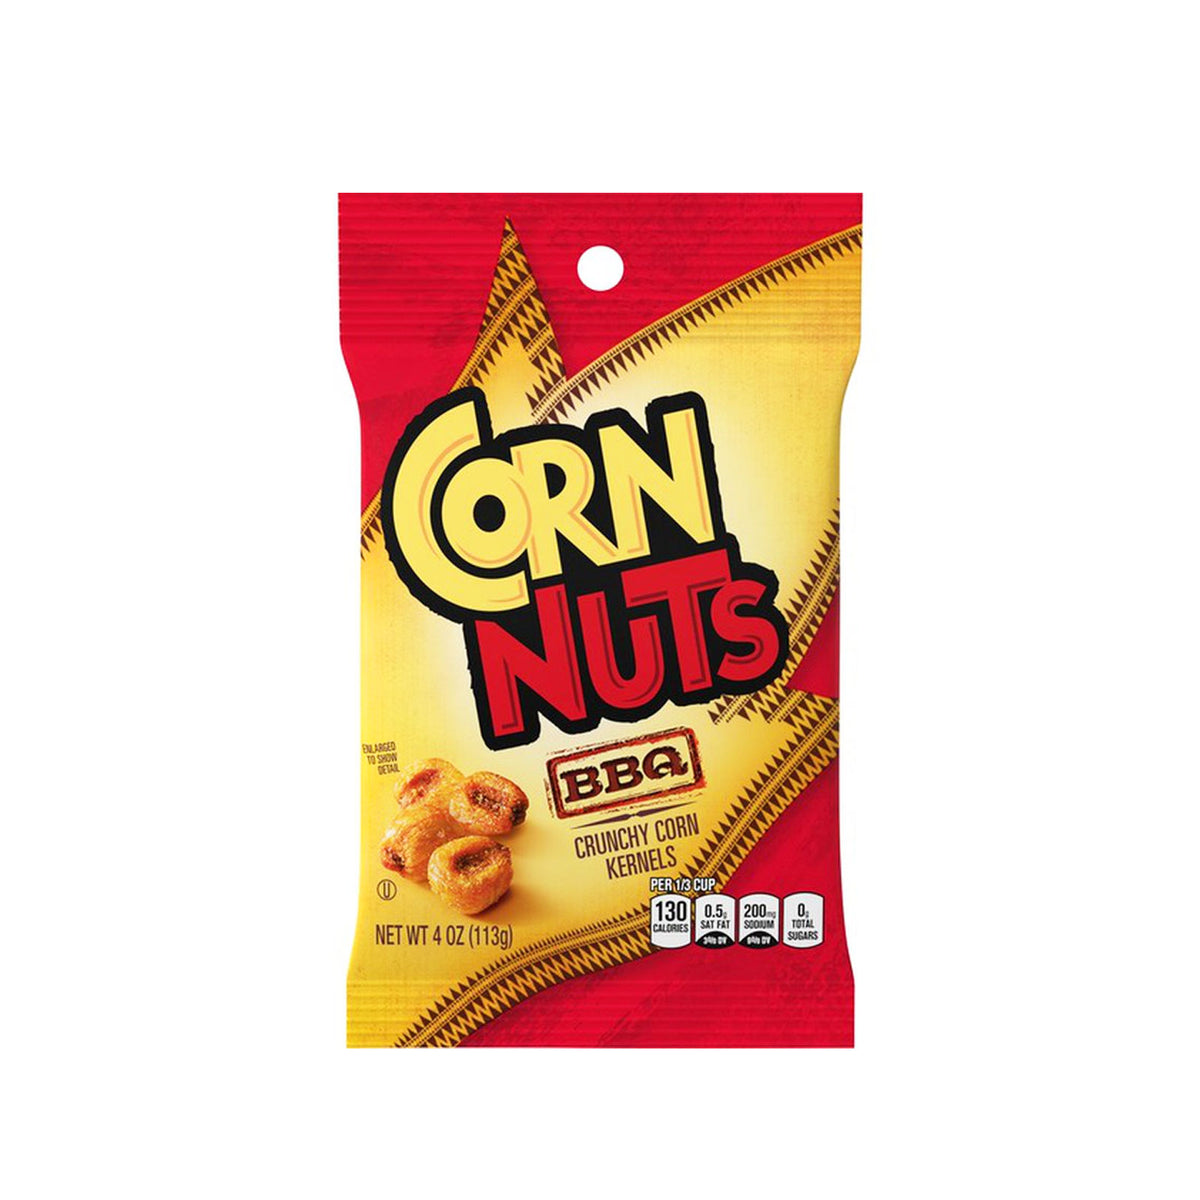 corn nuts crunch corn kernels bbq - 4oz